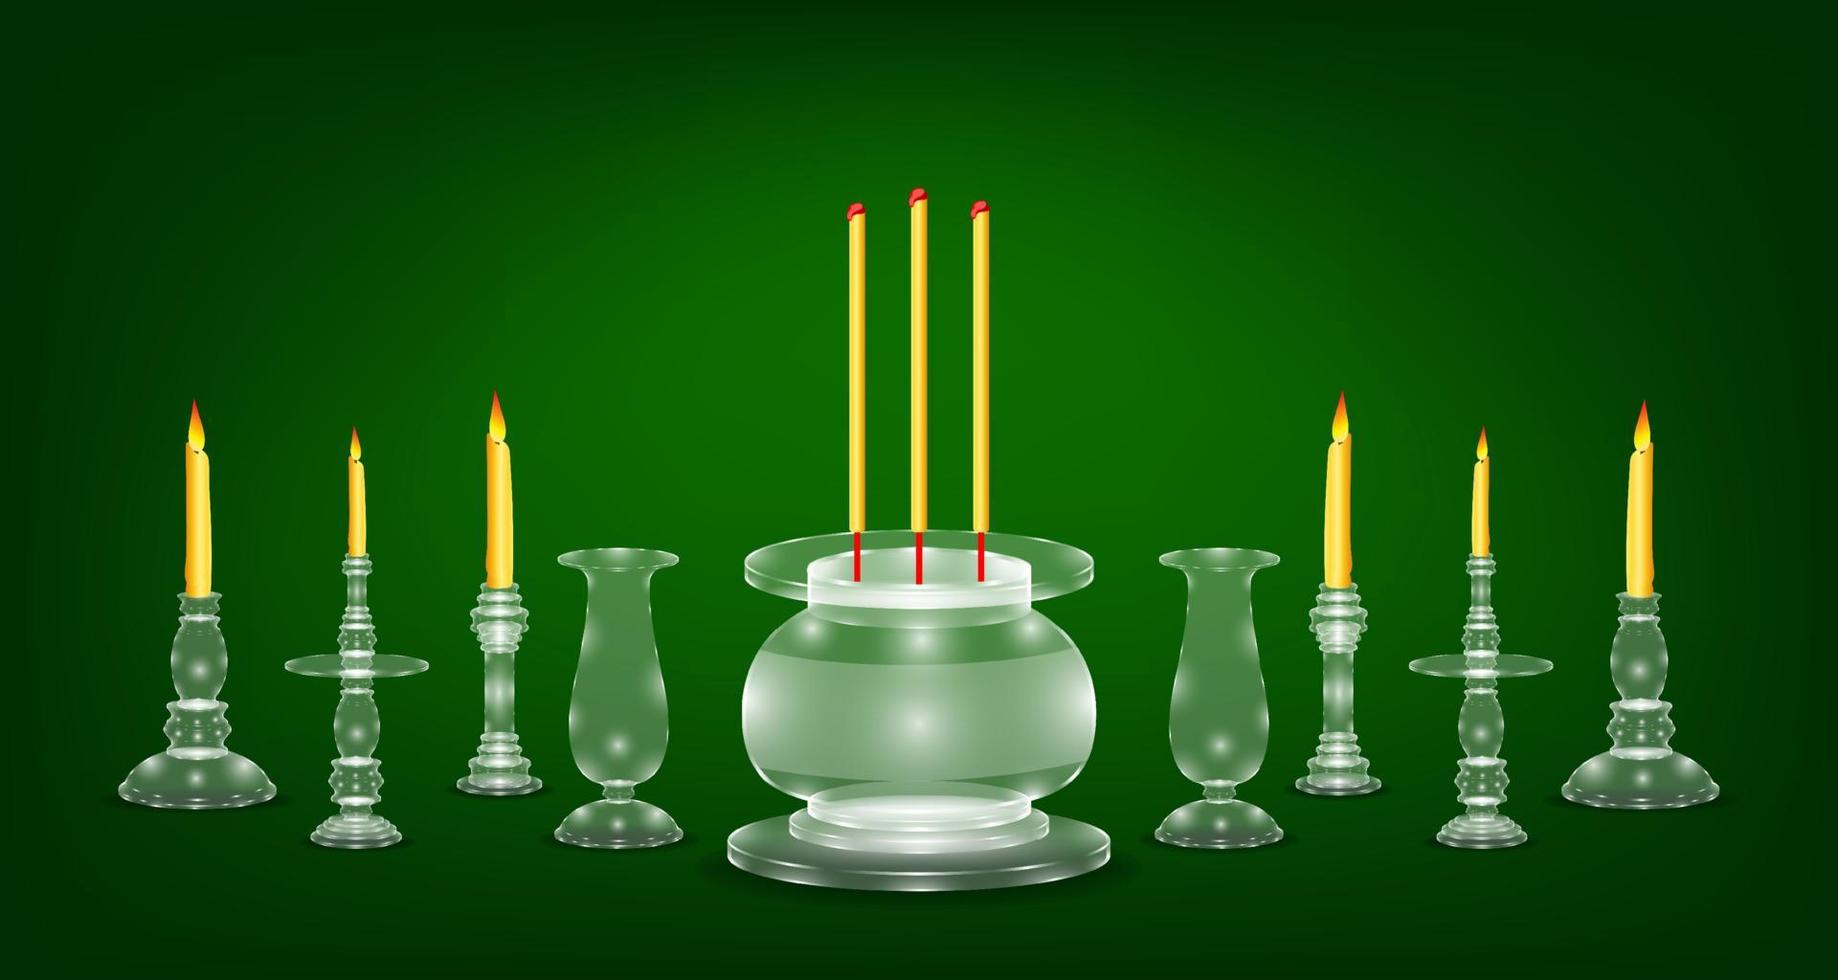 base de jarrón de vela de flor de incienso de cristal esmeralda blanco de lujo. fondo de color verde. ilustración vectorial eps10 vector